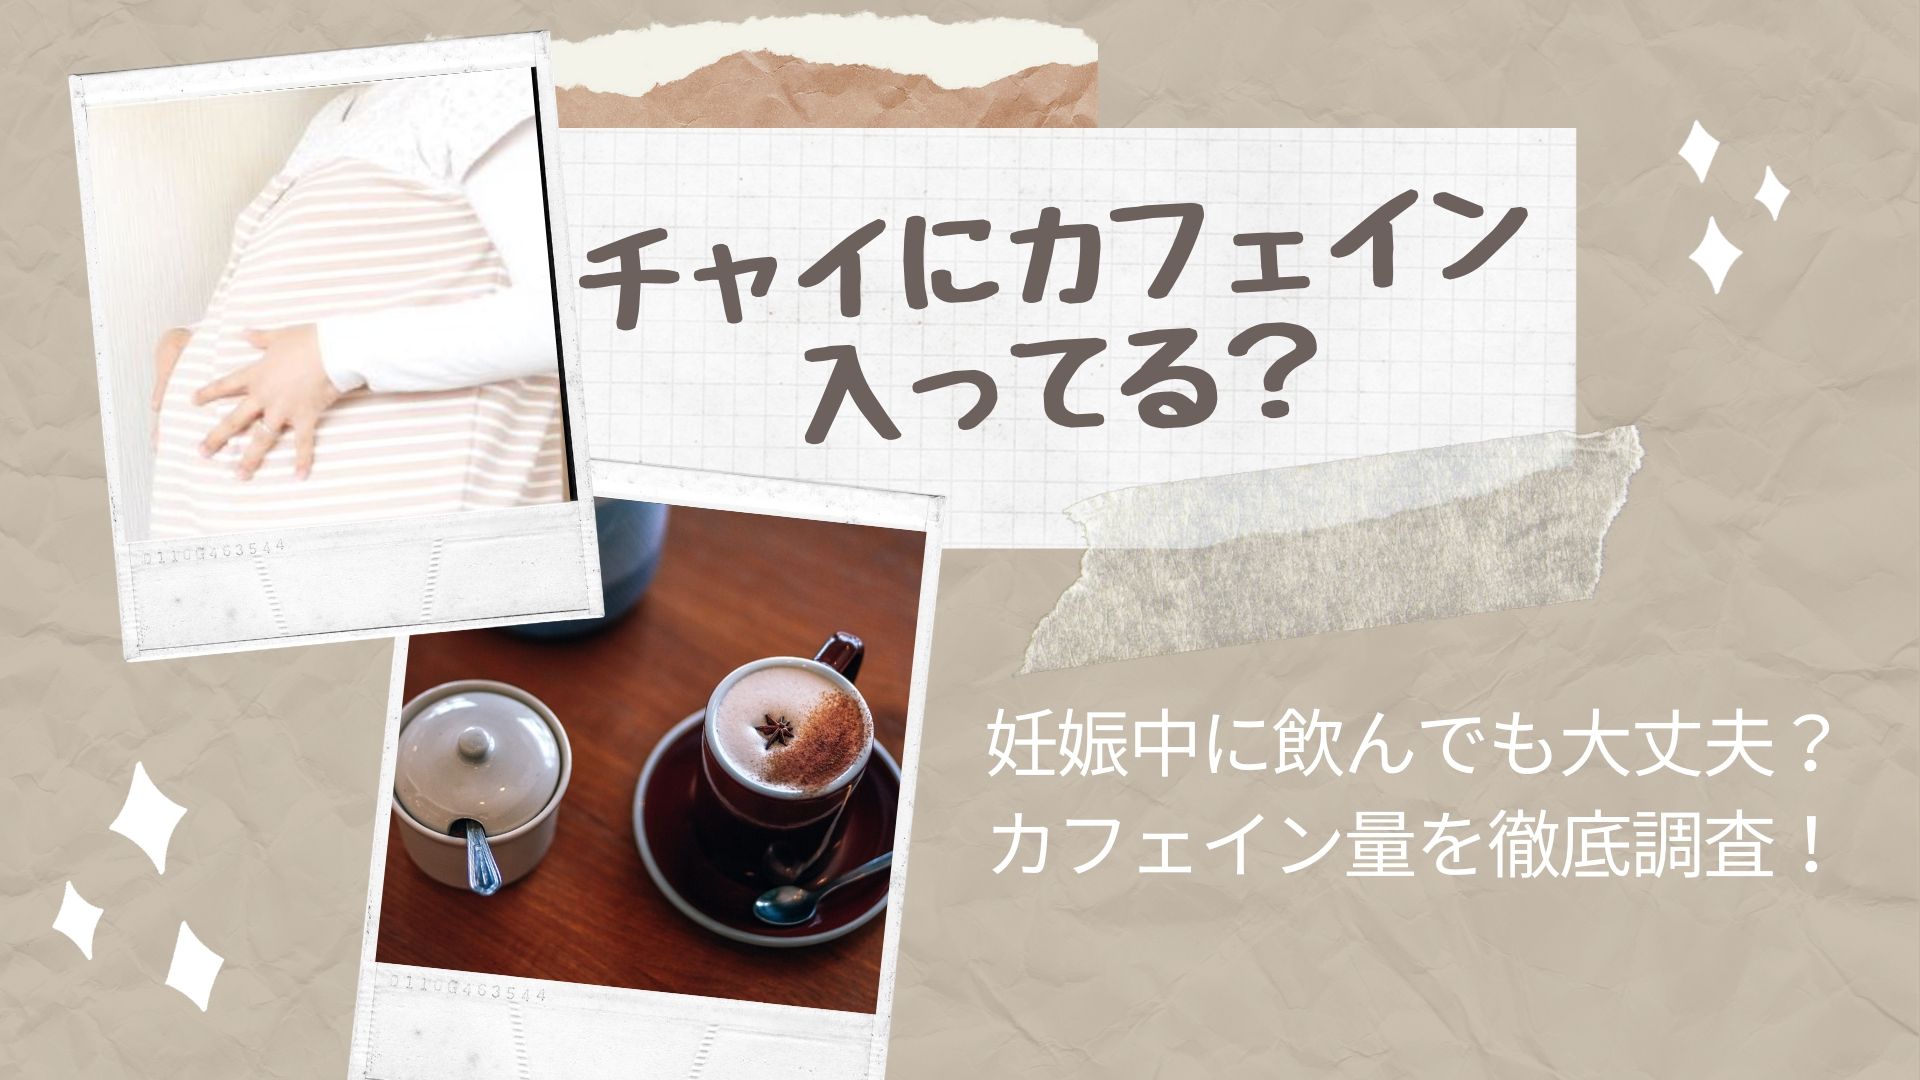 イン 妊婦 カフェ 【神戸】三宮でゆっくりランチ♪通いたくなるカフェ15店